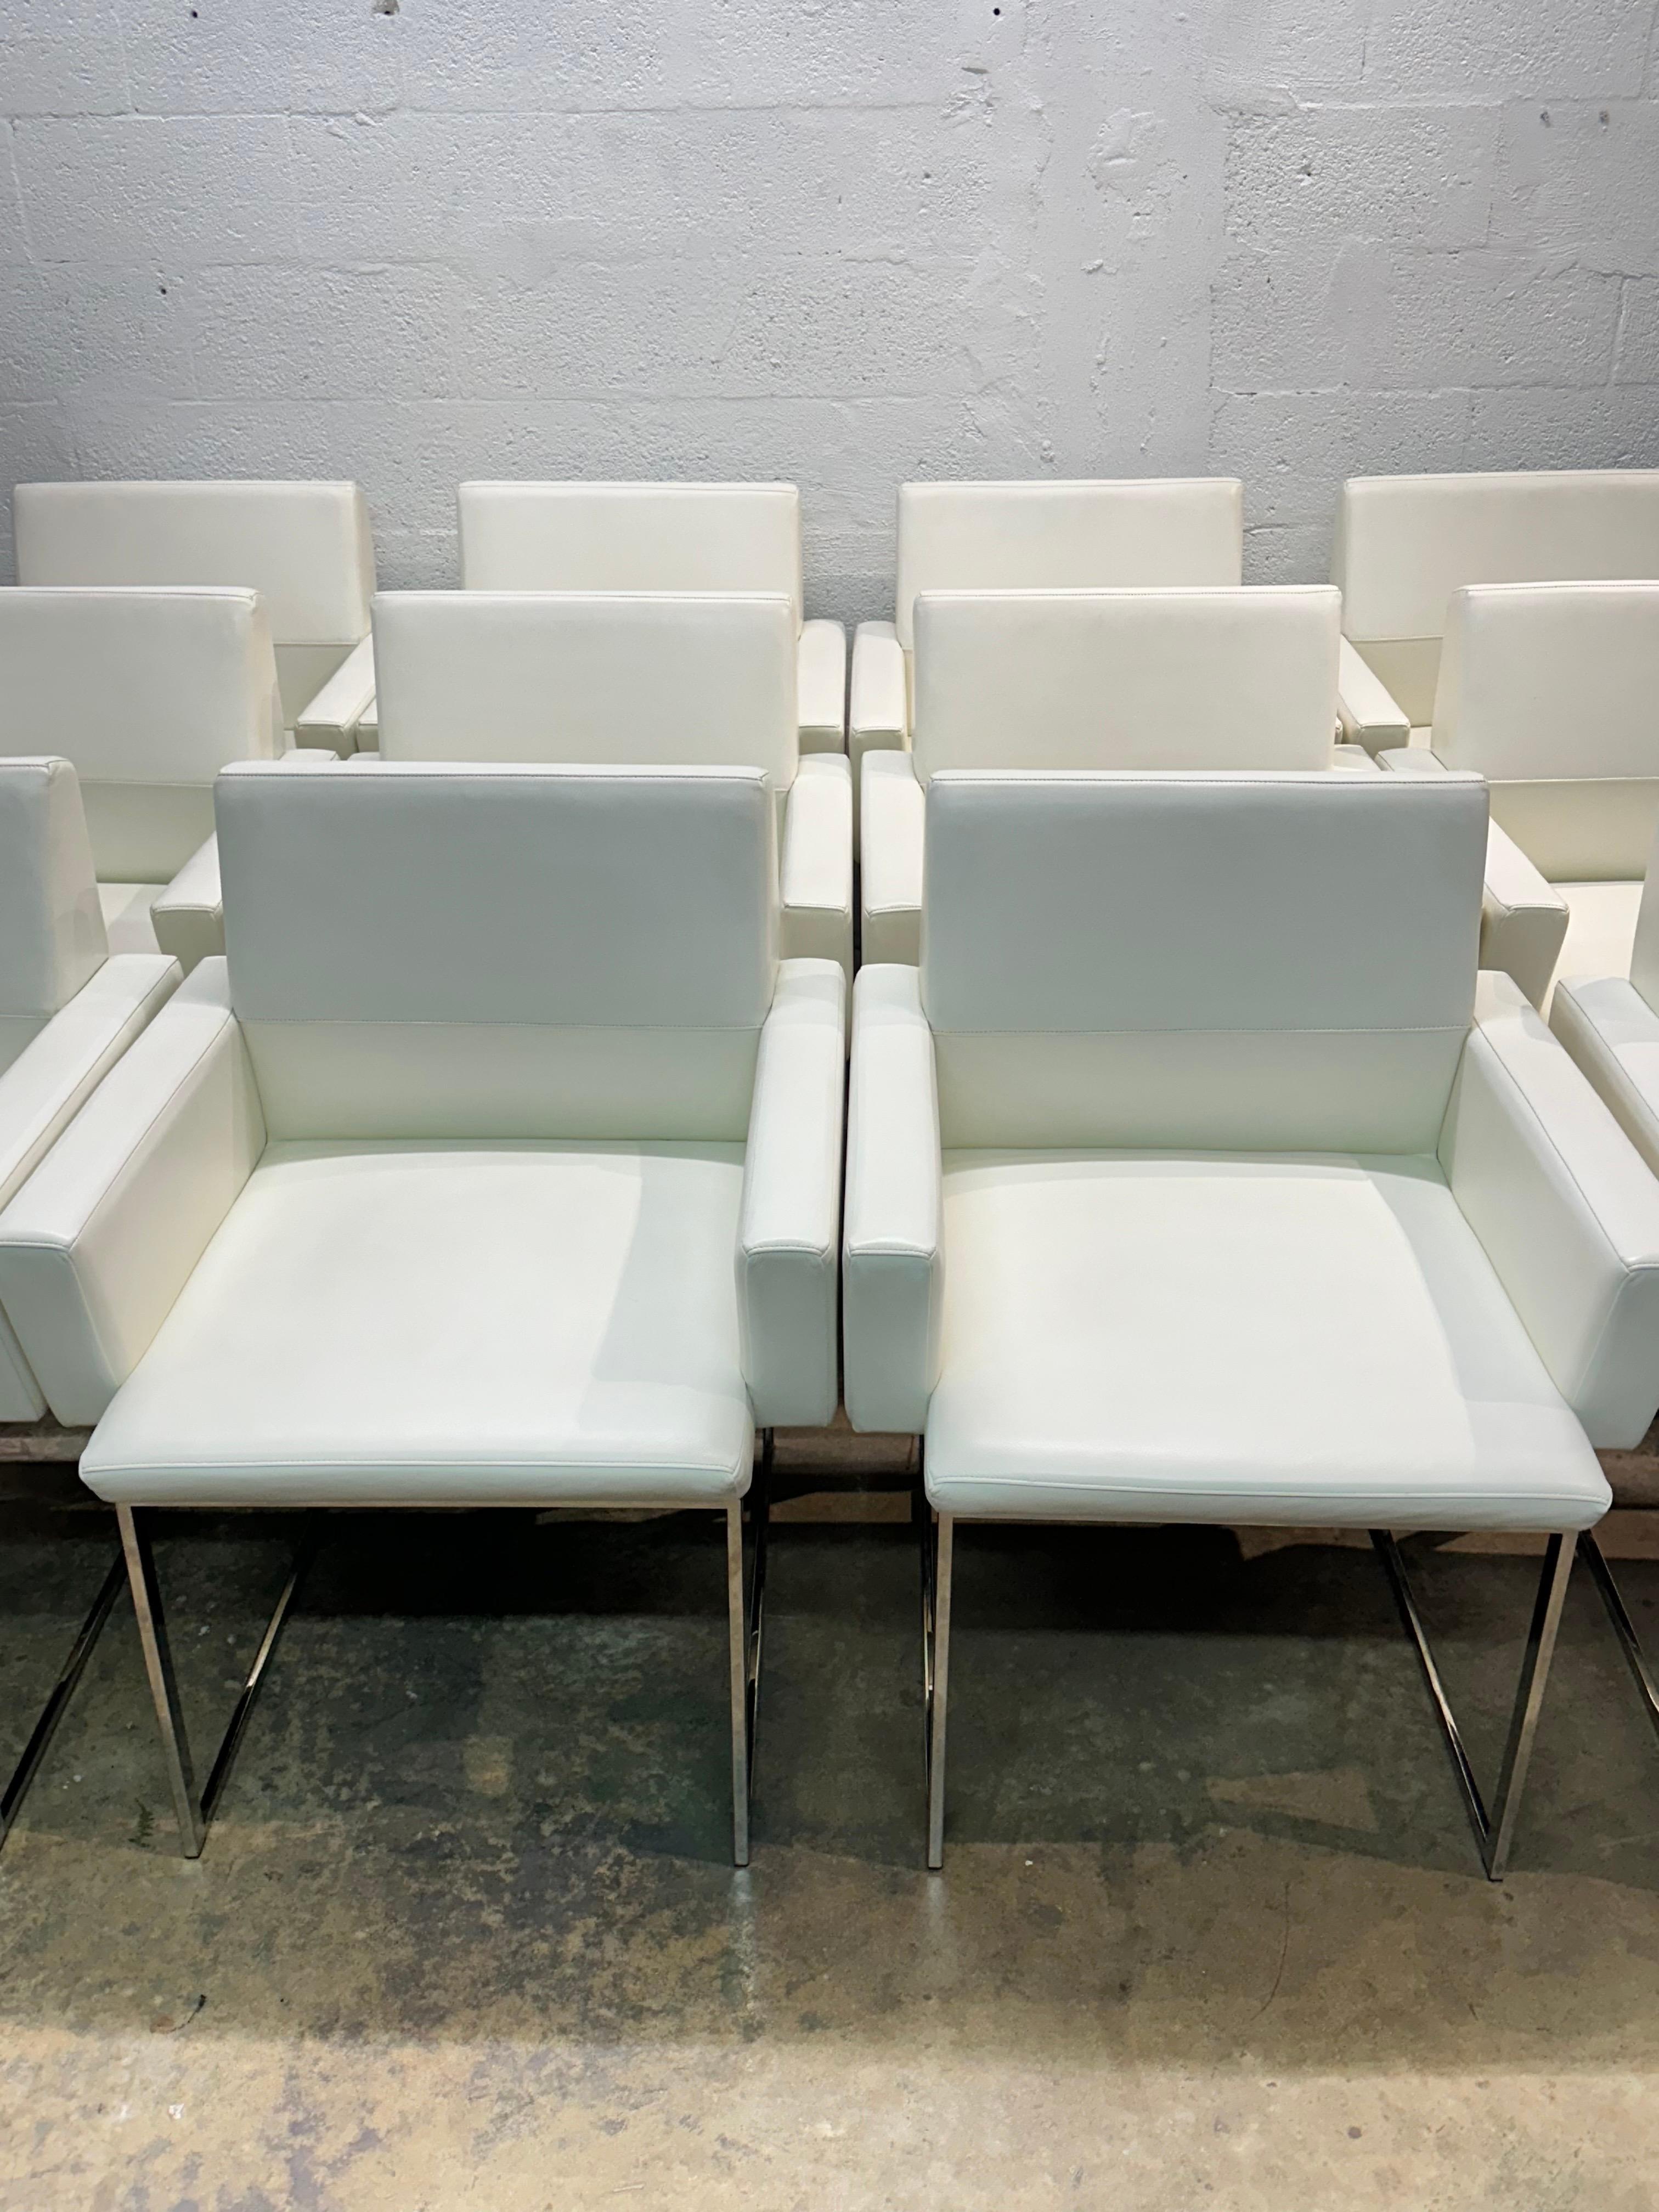 Hellweiße Sessel aus Naugahyde-Ökoleder auf polierten Chromfüßen von Brueton International.

Der Preis gilt pro Stuhlpaar.  Nur fünf Paare verfügbar.  (Ein Paar wurde verkauft)

Armhöhe: 24-1/2